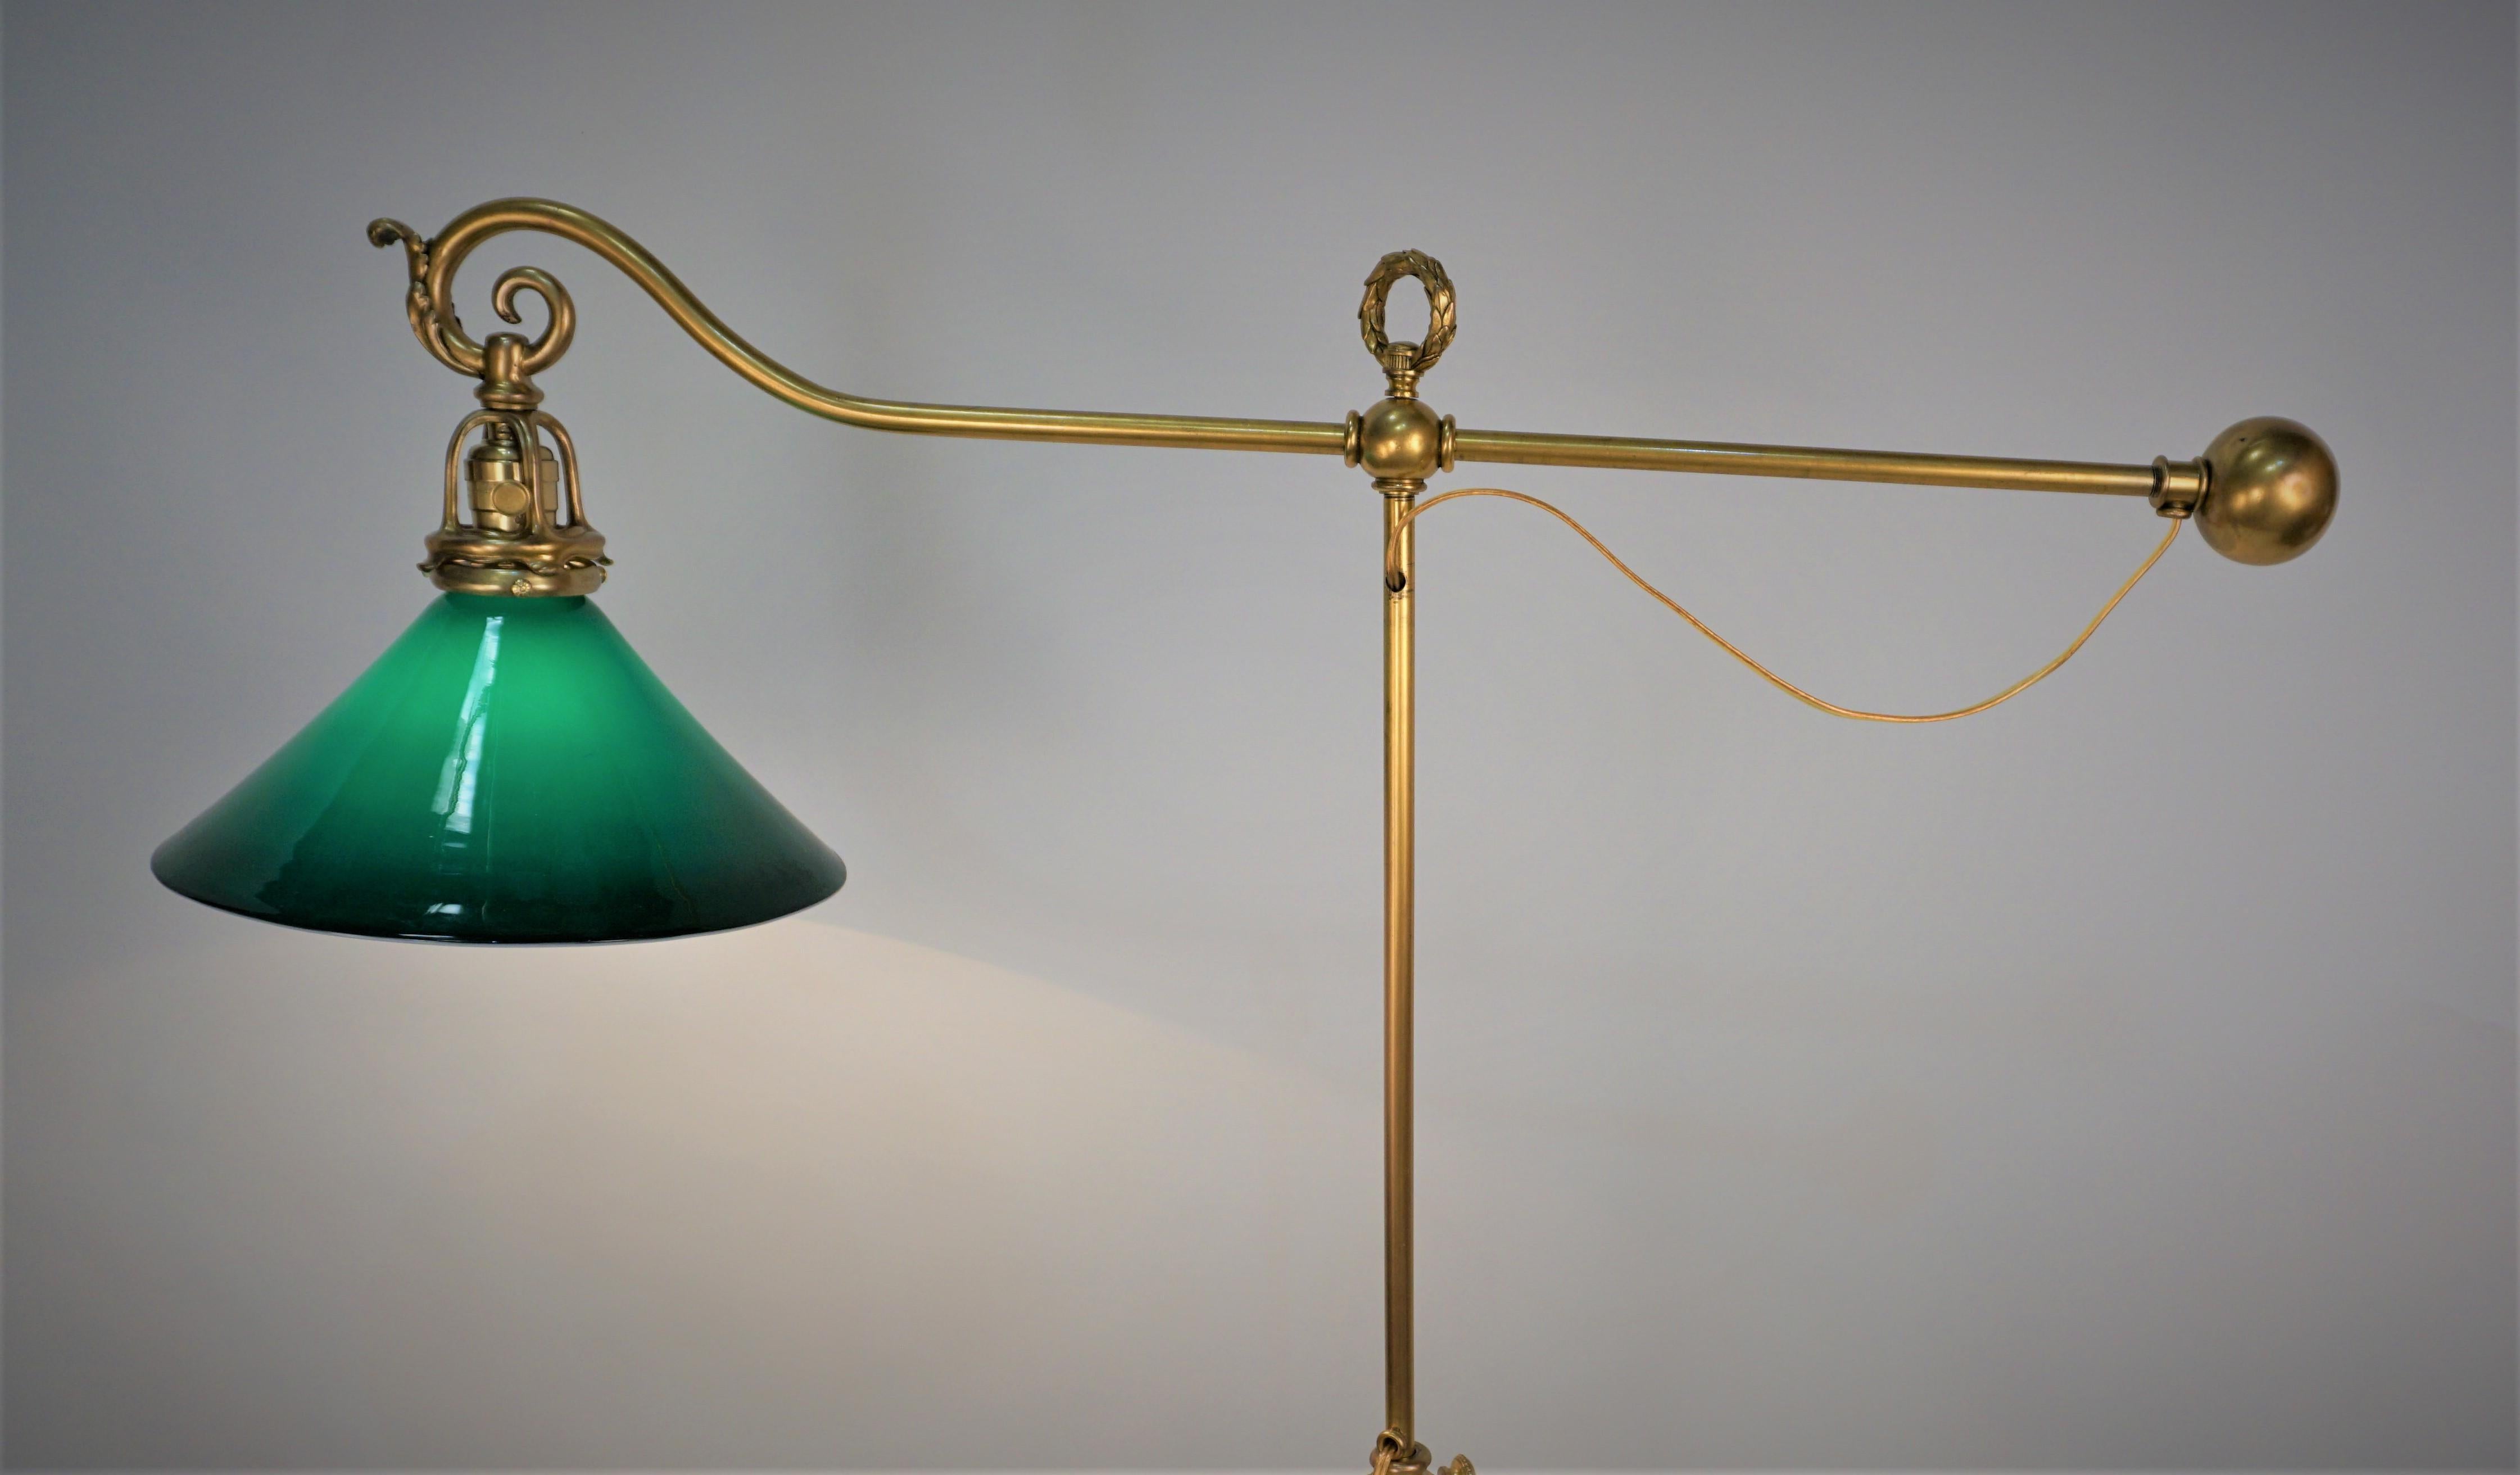 Elegant lampadaire américain en bronze/laiton à bras et hauteur réglables, abat-jour en verre vert.